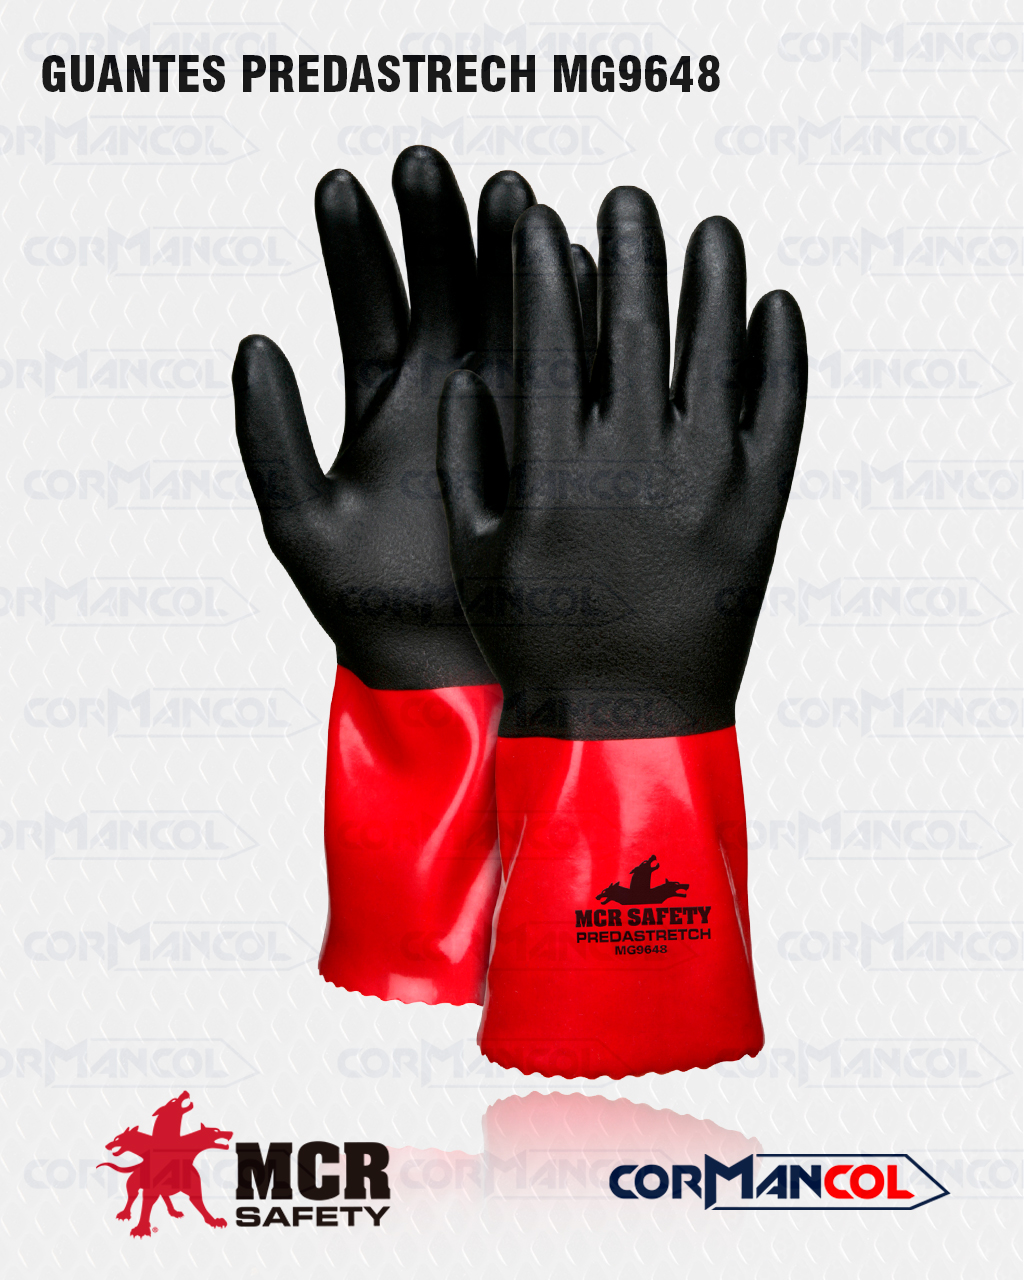 Guantes Predastrech rojo/negro nitrilo PVC (MCR) | Cormancol